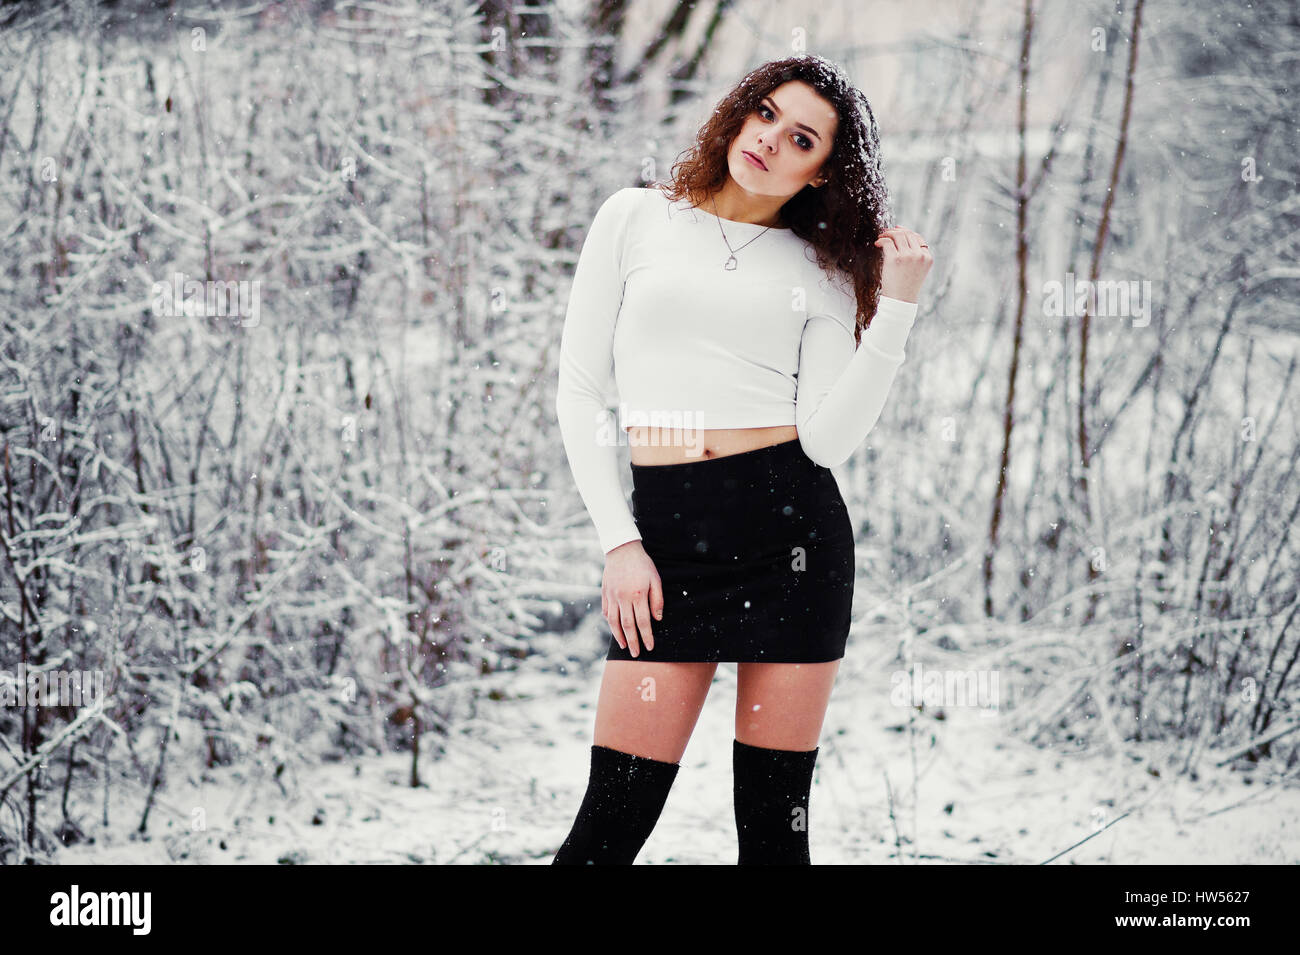 Curly Brünette Mädchen Hintergrund fallenden Schnee, schwarzen Minirock und  Wolle Strümpfe tragen. Modell im Winter. Mode-Portrait bei Schneewetter.  Instagra Stockfotografie - Alamy